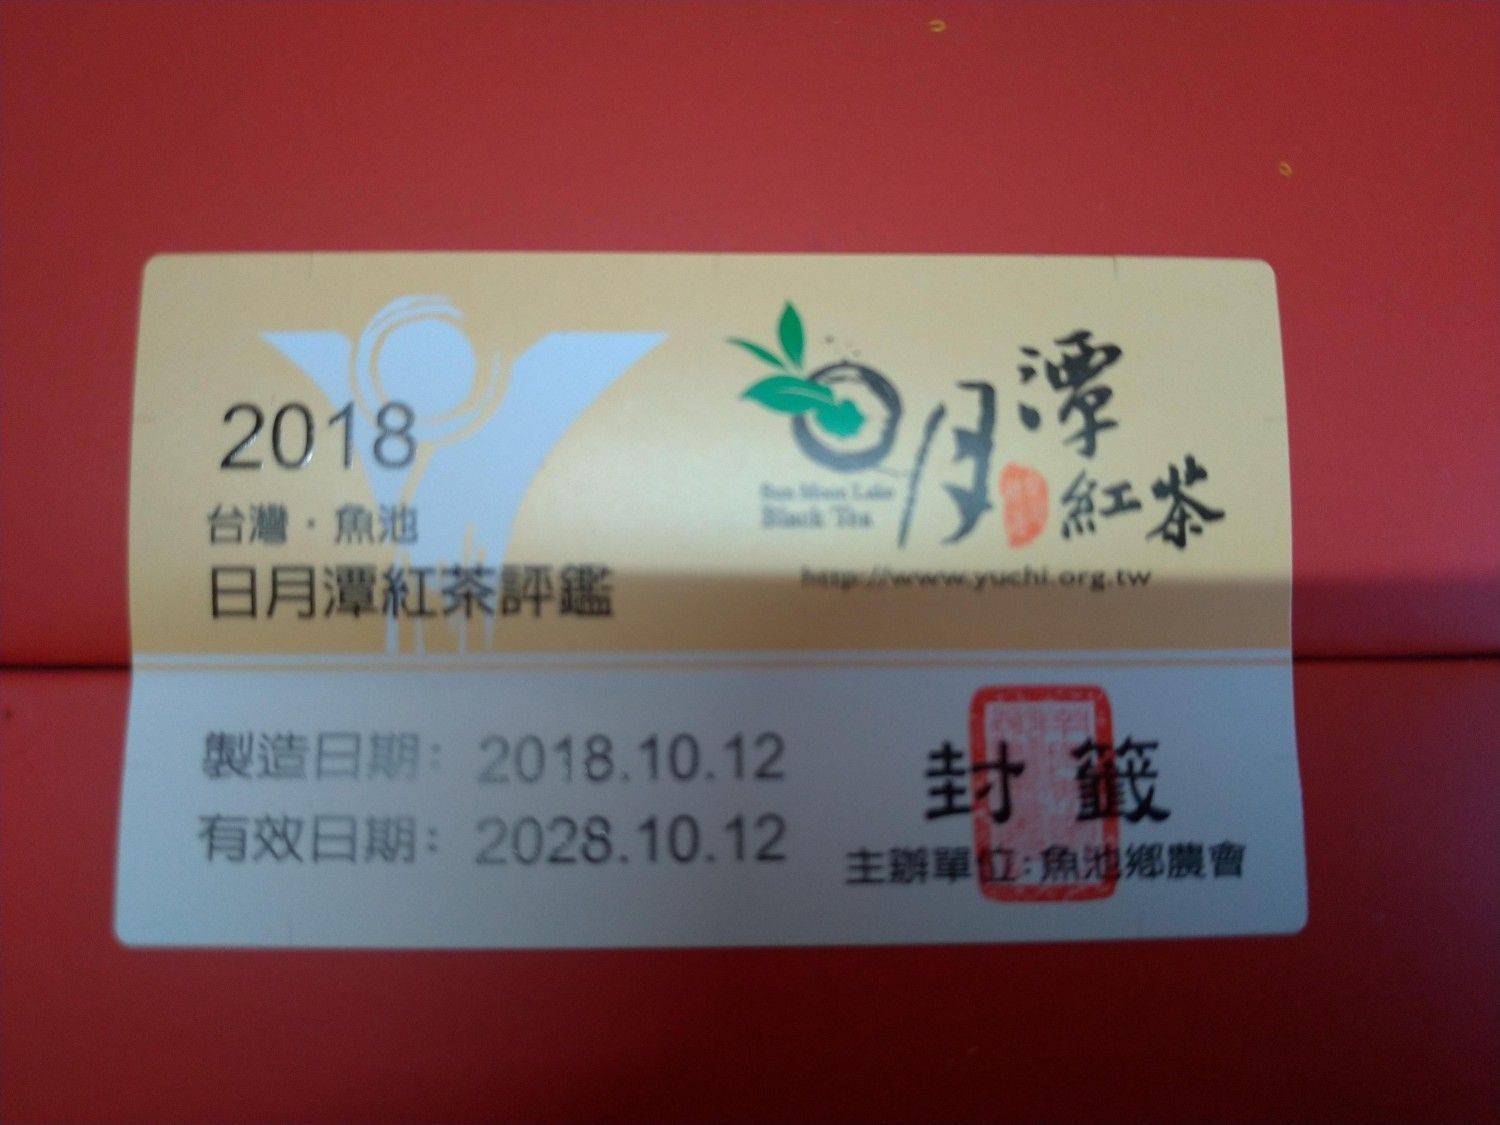 2018 優質獎山茶禮盒組(限量)